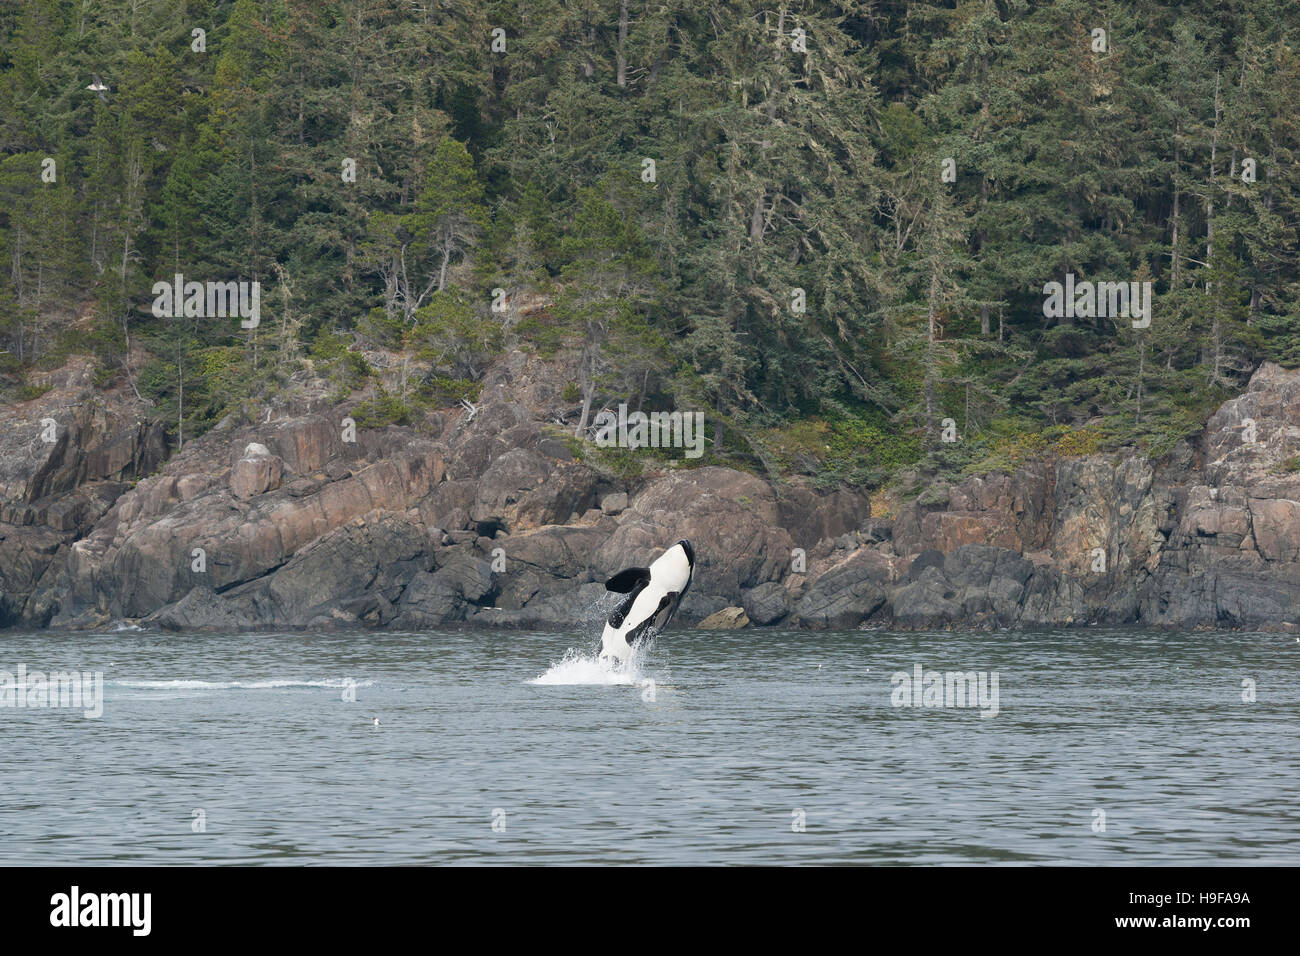 südlichen ansässige Orca oder Killerwal, Orcinus Orca, Verletzung, Vancouver Island, British Columbia, Kanada Stockfoto